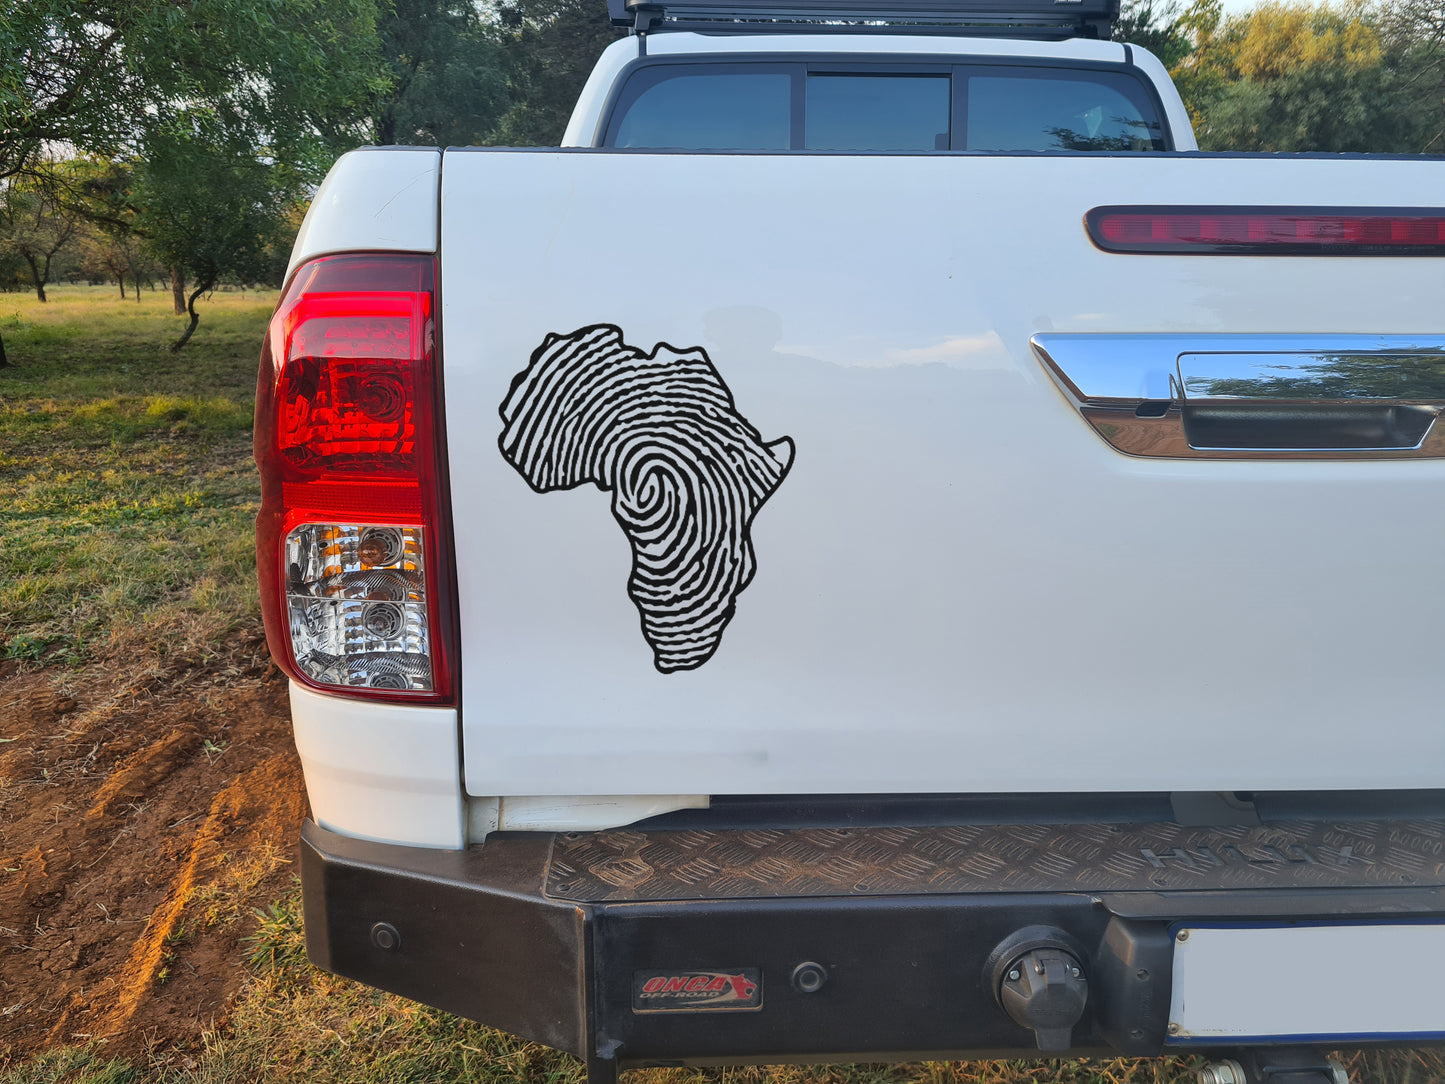 Africa Afrika Fingerprint Continent Bakkie Car Vinyl Decal Sticker Art SA